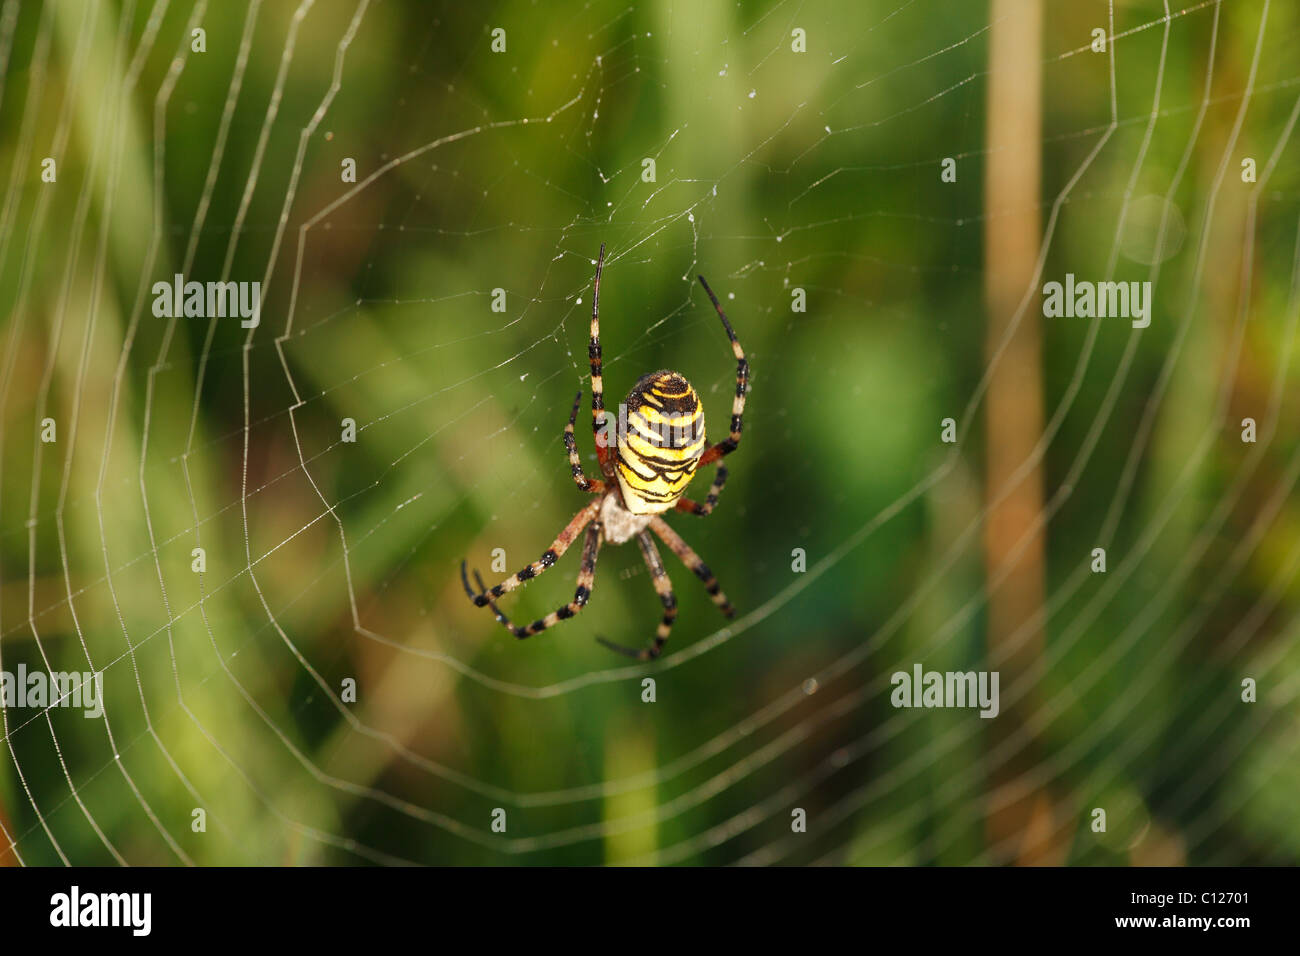 Wasp Spider (Argiope bruennichi) in a spider web, Bavaria, Germany Stock Photo